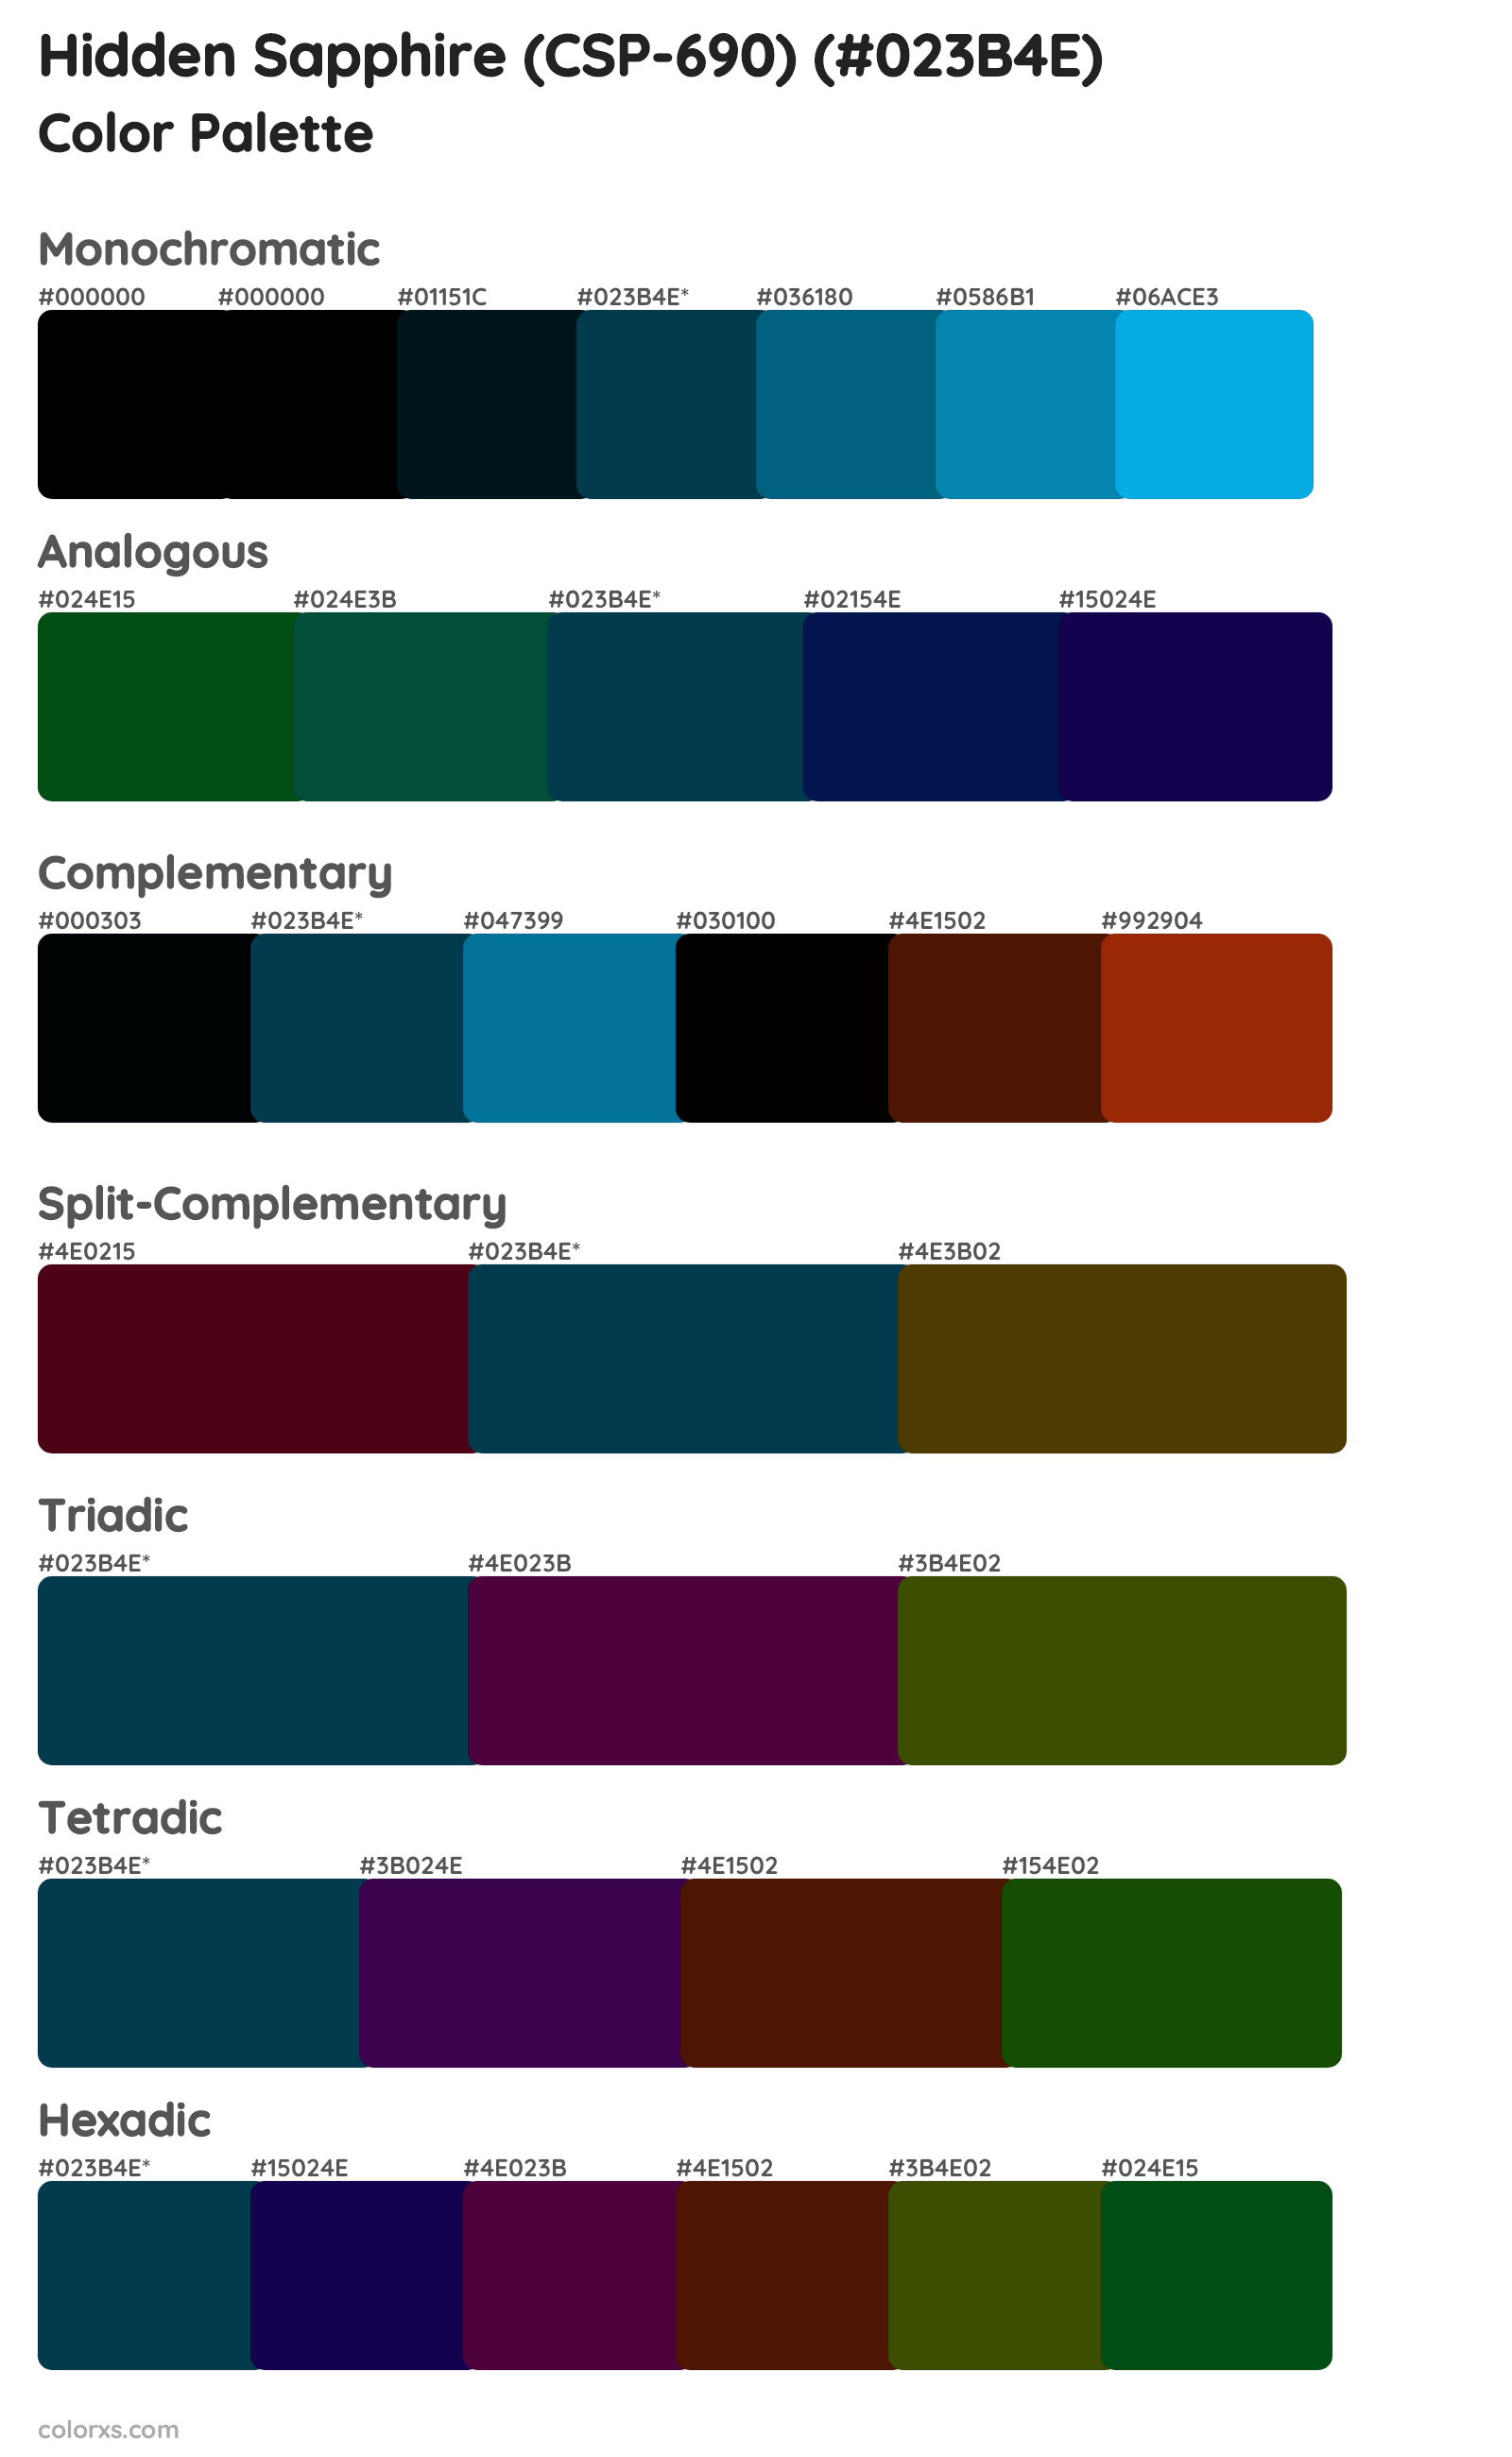 Hidden Sapphire (CSP-690) Color Scheme Palettes